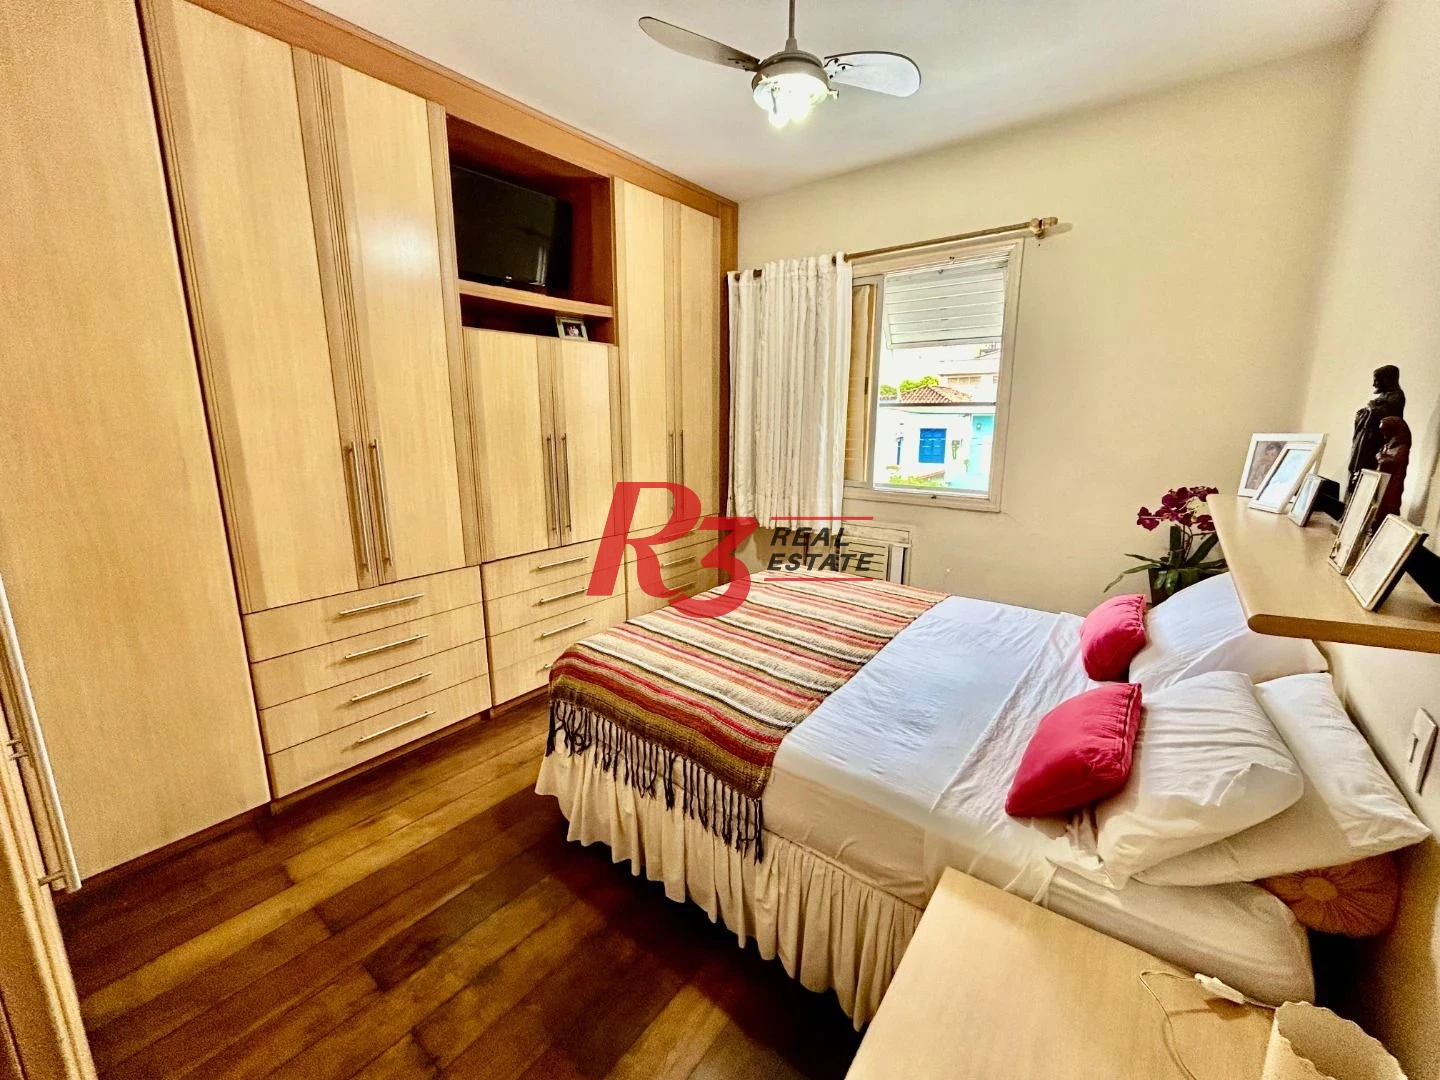 Apartamento com 4 dormitórios à venda, 220 m² por R$ 1.500.000,00 - Aparecida - Santos/SP